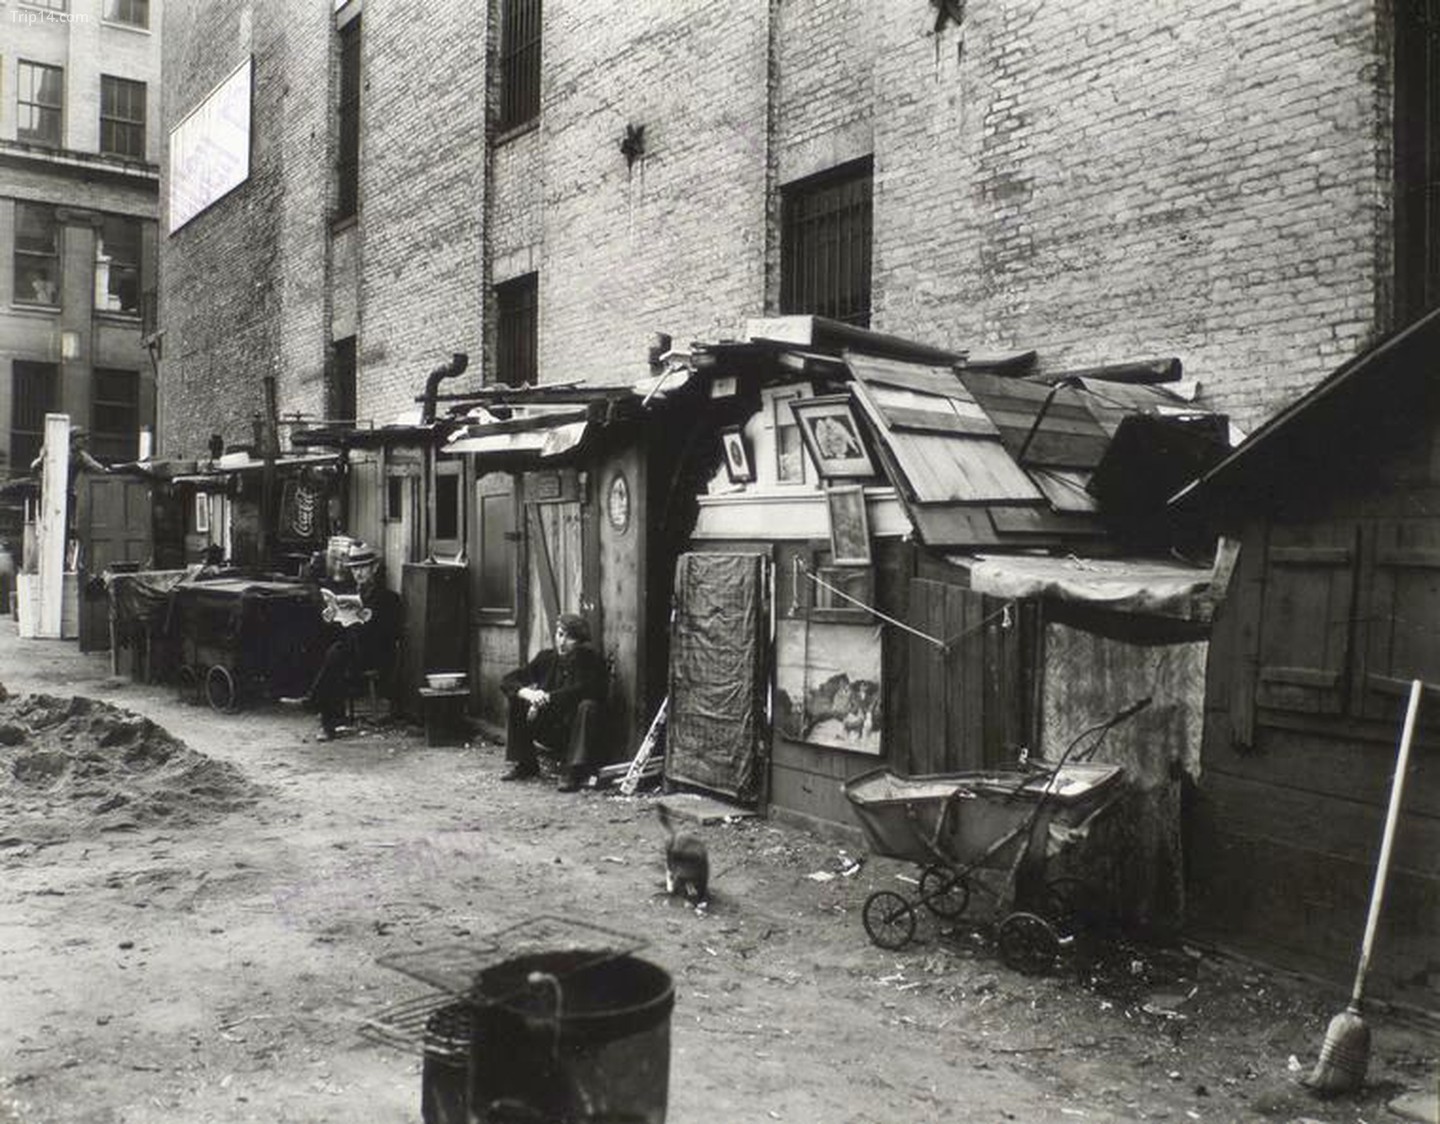  Túp lều và những người đàn ông thất nghiệp ở Thành phố New York, 1935   |   